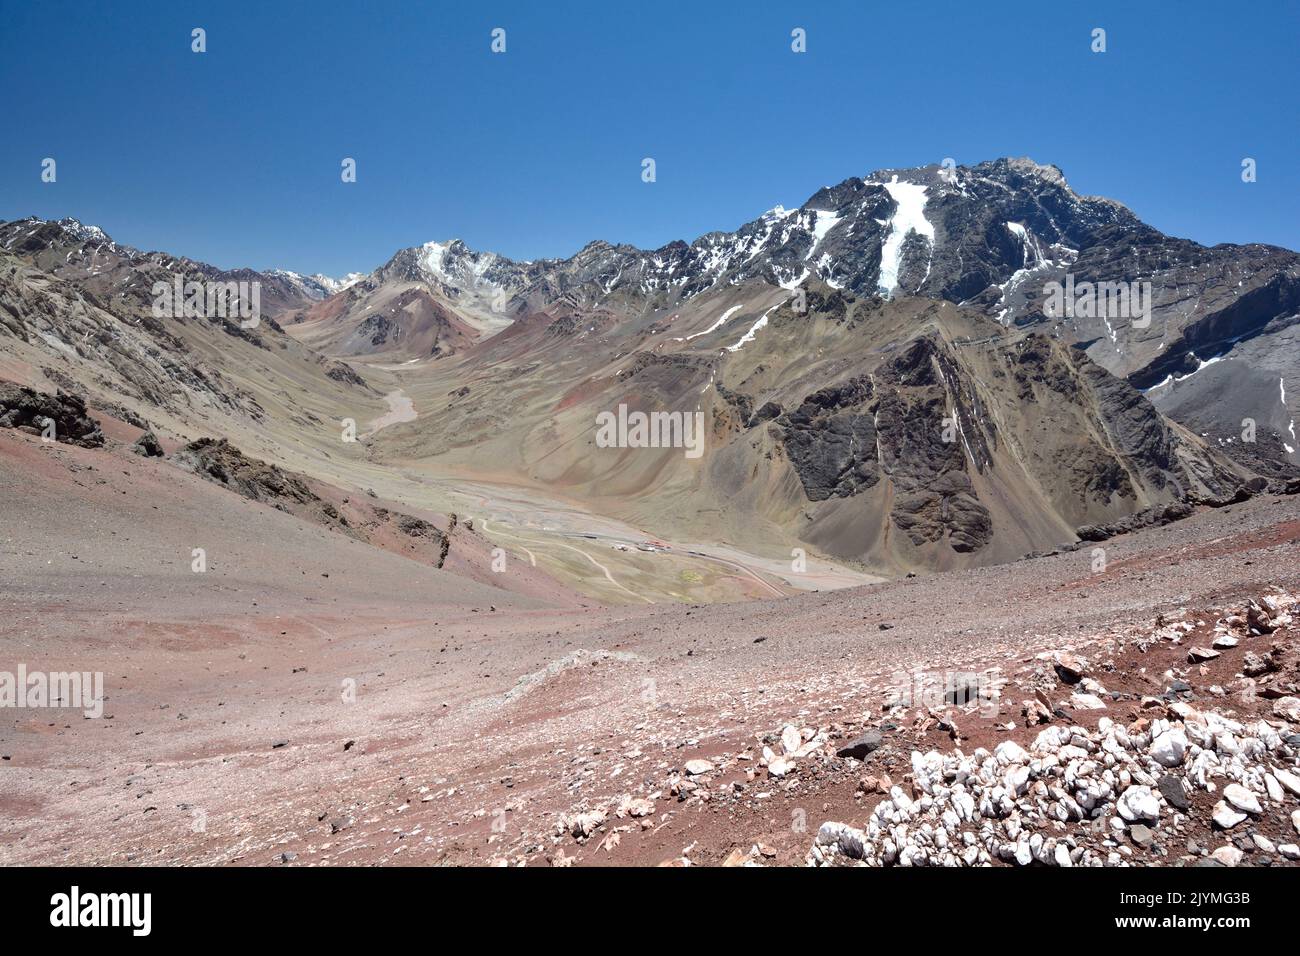 Valle de la Quebrada de Matienzo visto desde el paso del Cristo Redentor de los Andes, Cordillera de los Andes, Provincia de Mendoza, Argentina Foto de stock